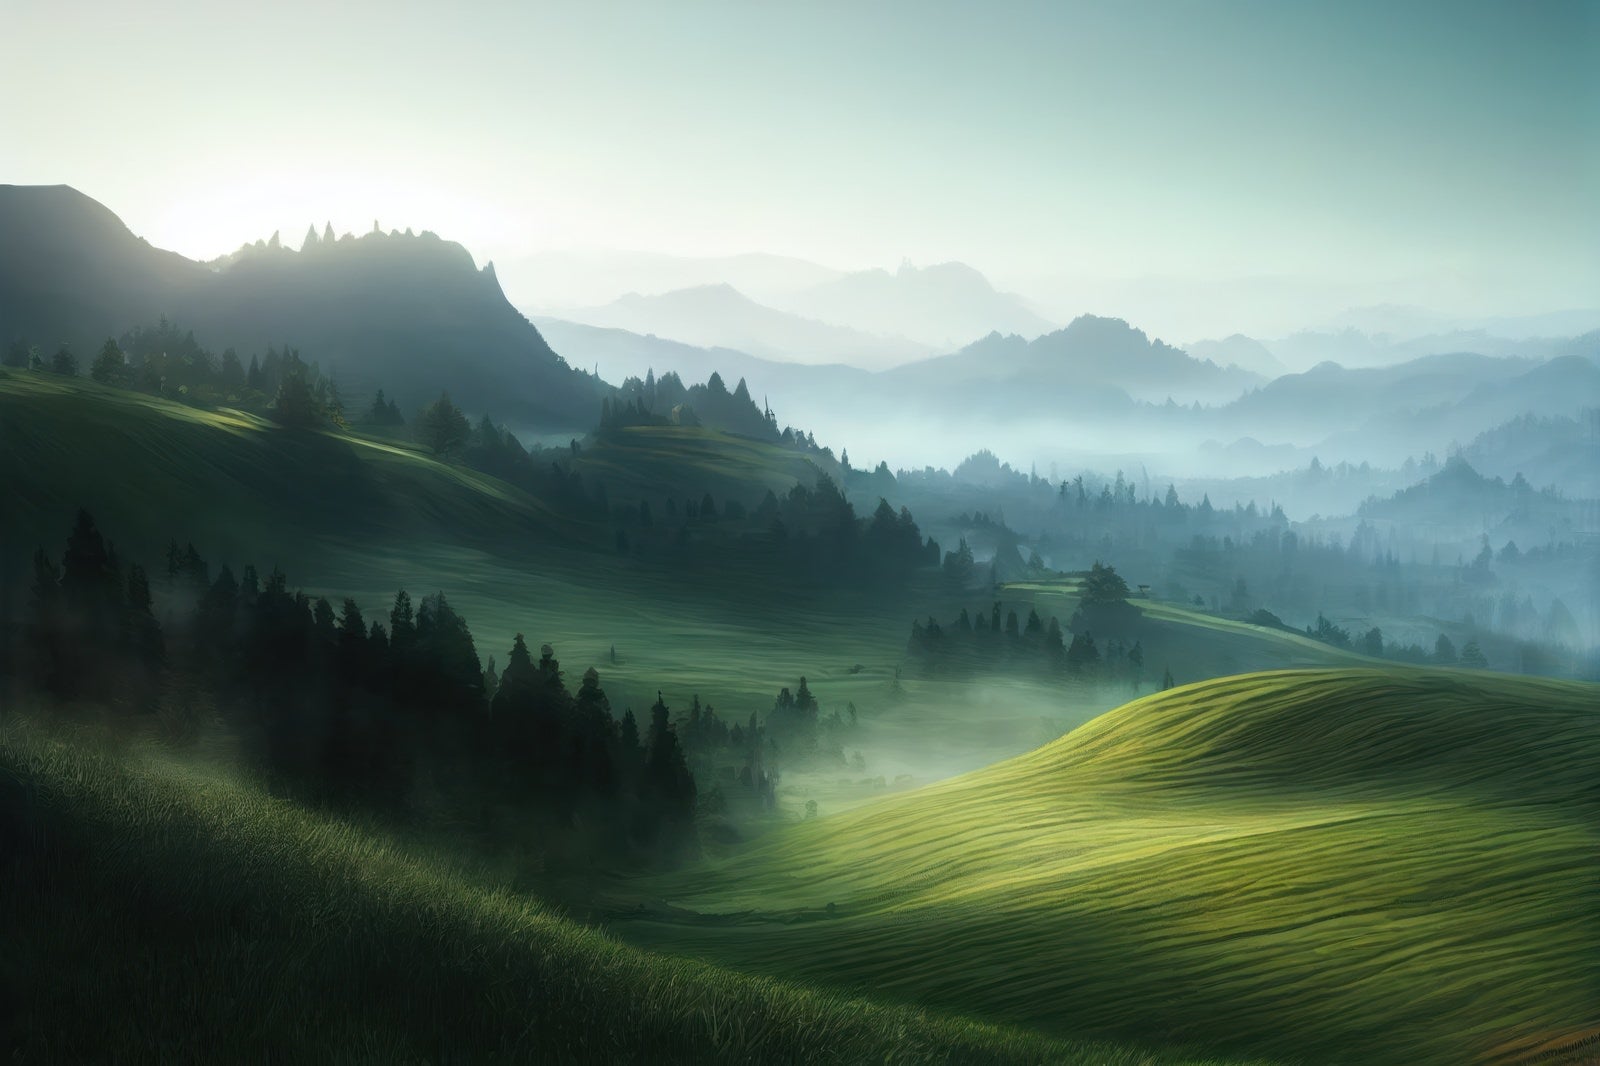 「濃霧が漂う山の静寂」の写真